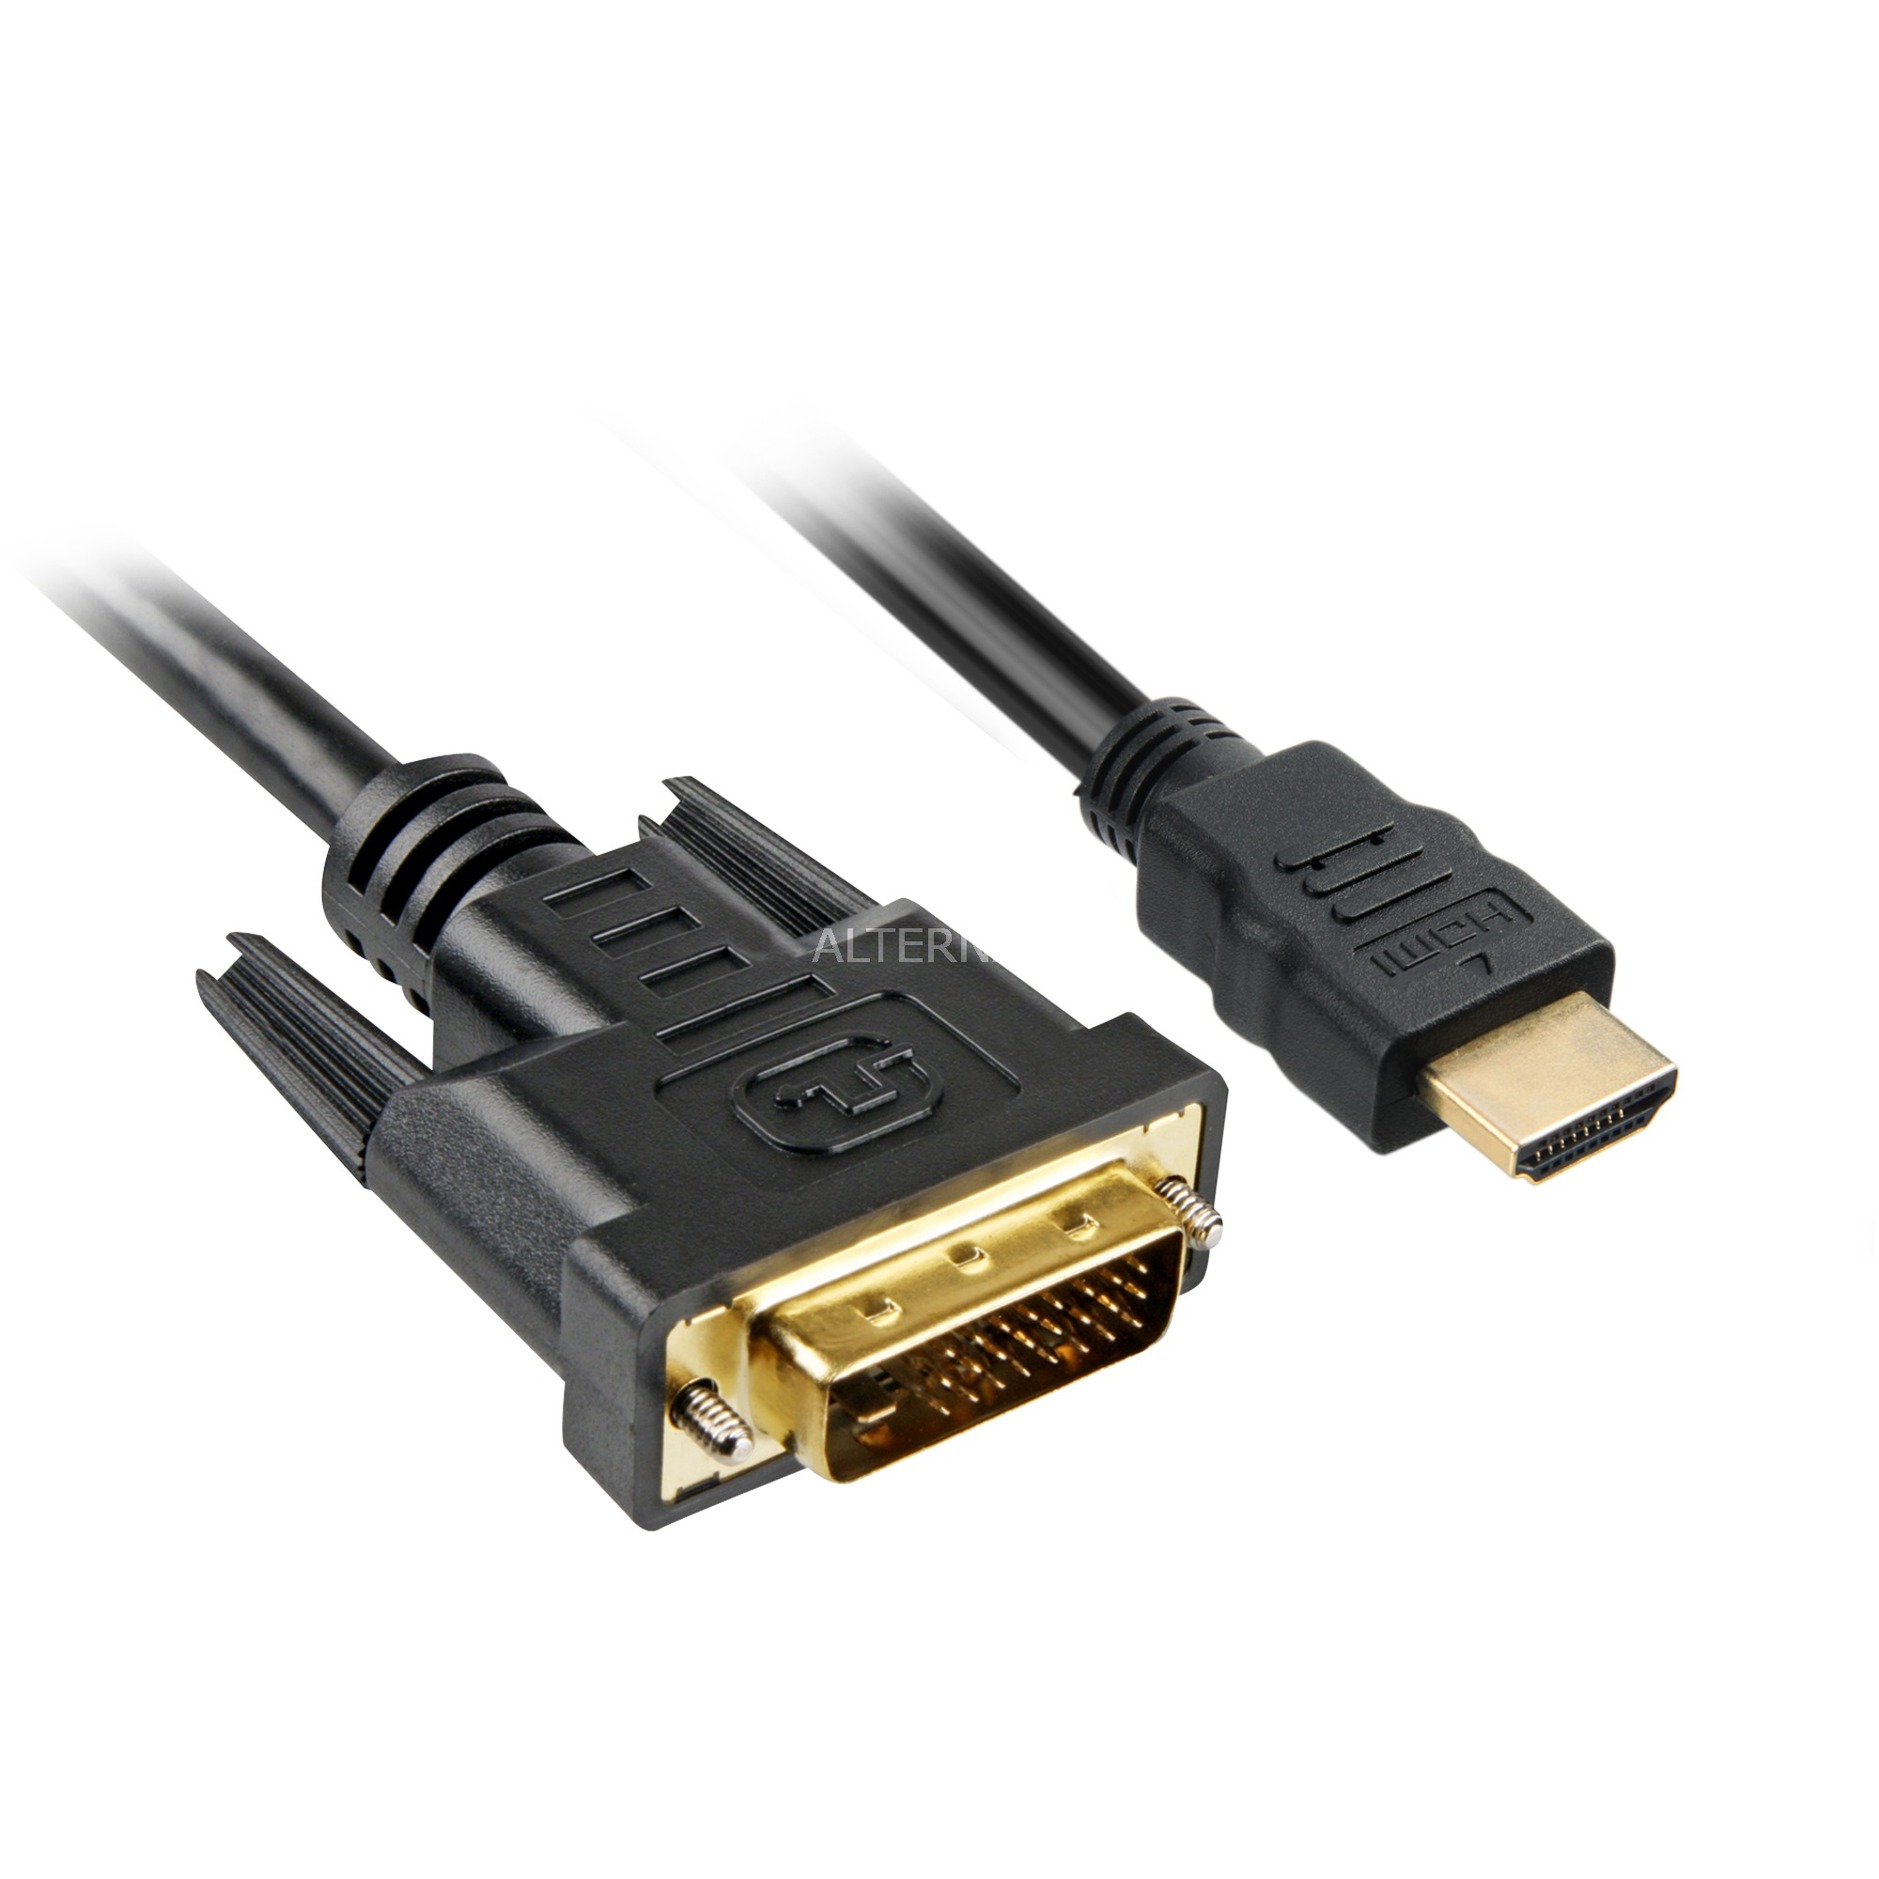 Image of Alternate - Adapterkabel HDMI > DVI-D online einkaufen bei Alternate